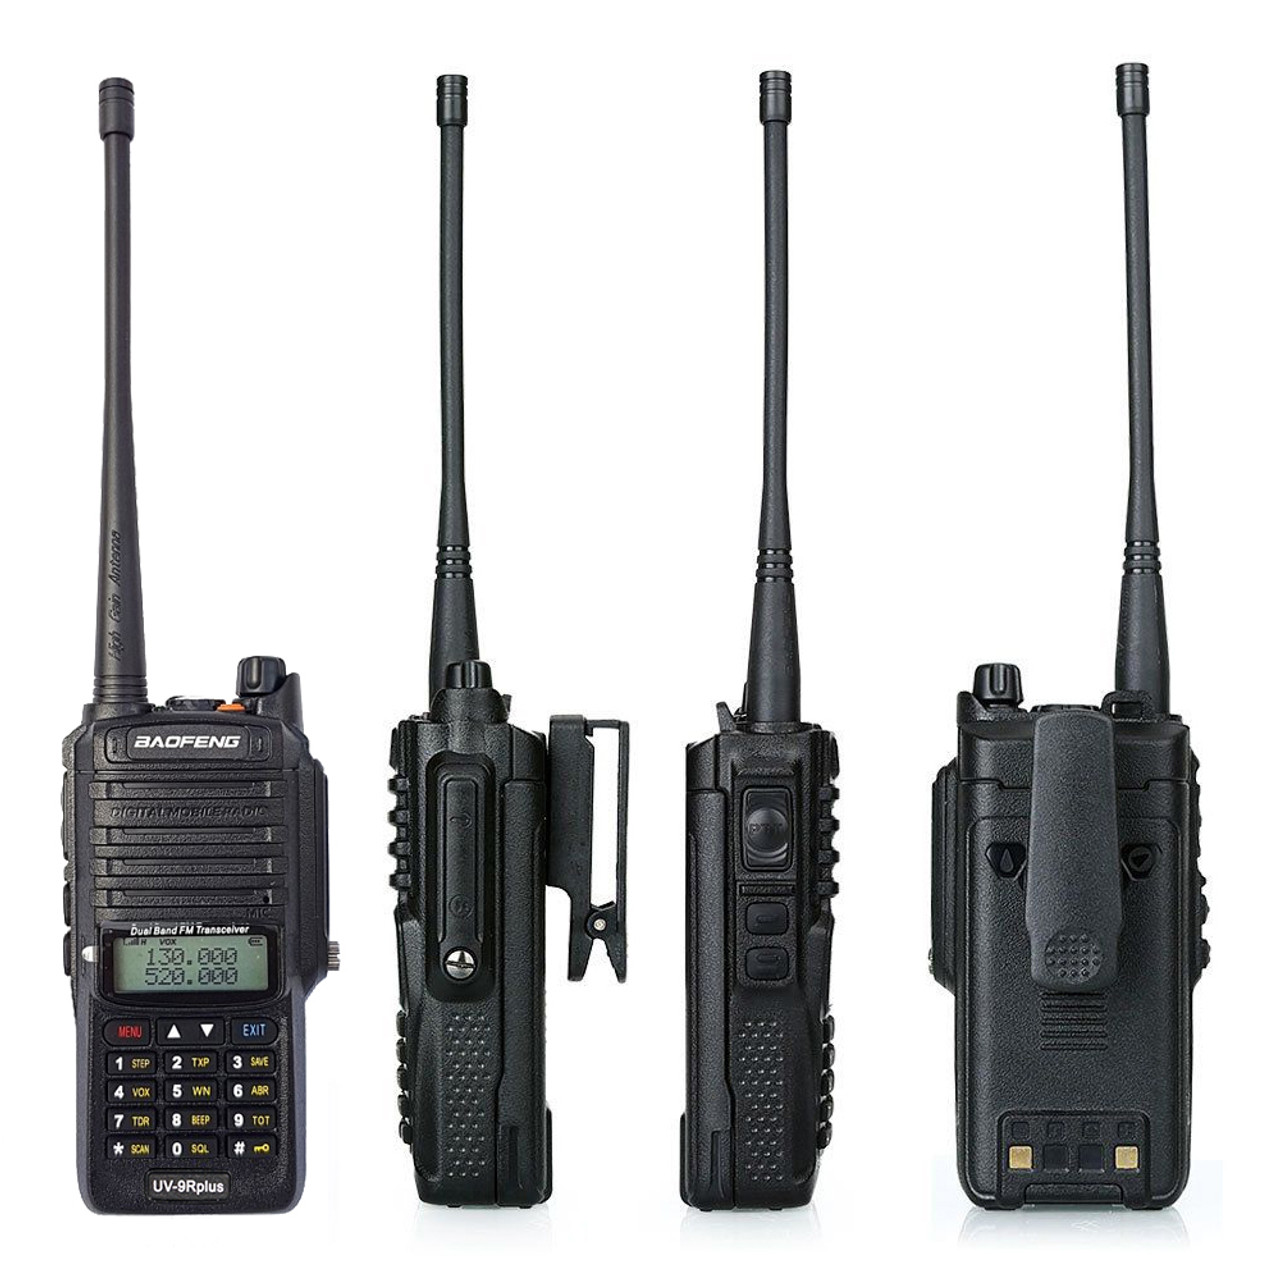 Baofeng UV-9R Plus IP67 Waterproof UHF/VHF Walkie Talkie 8W Ham